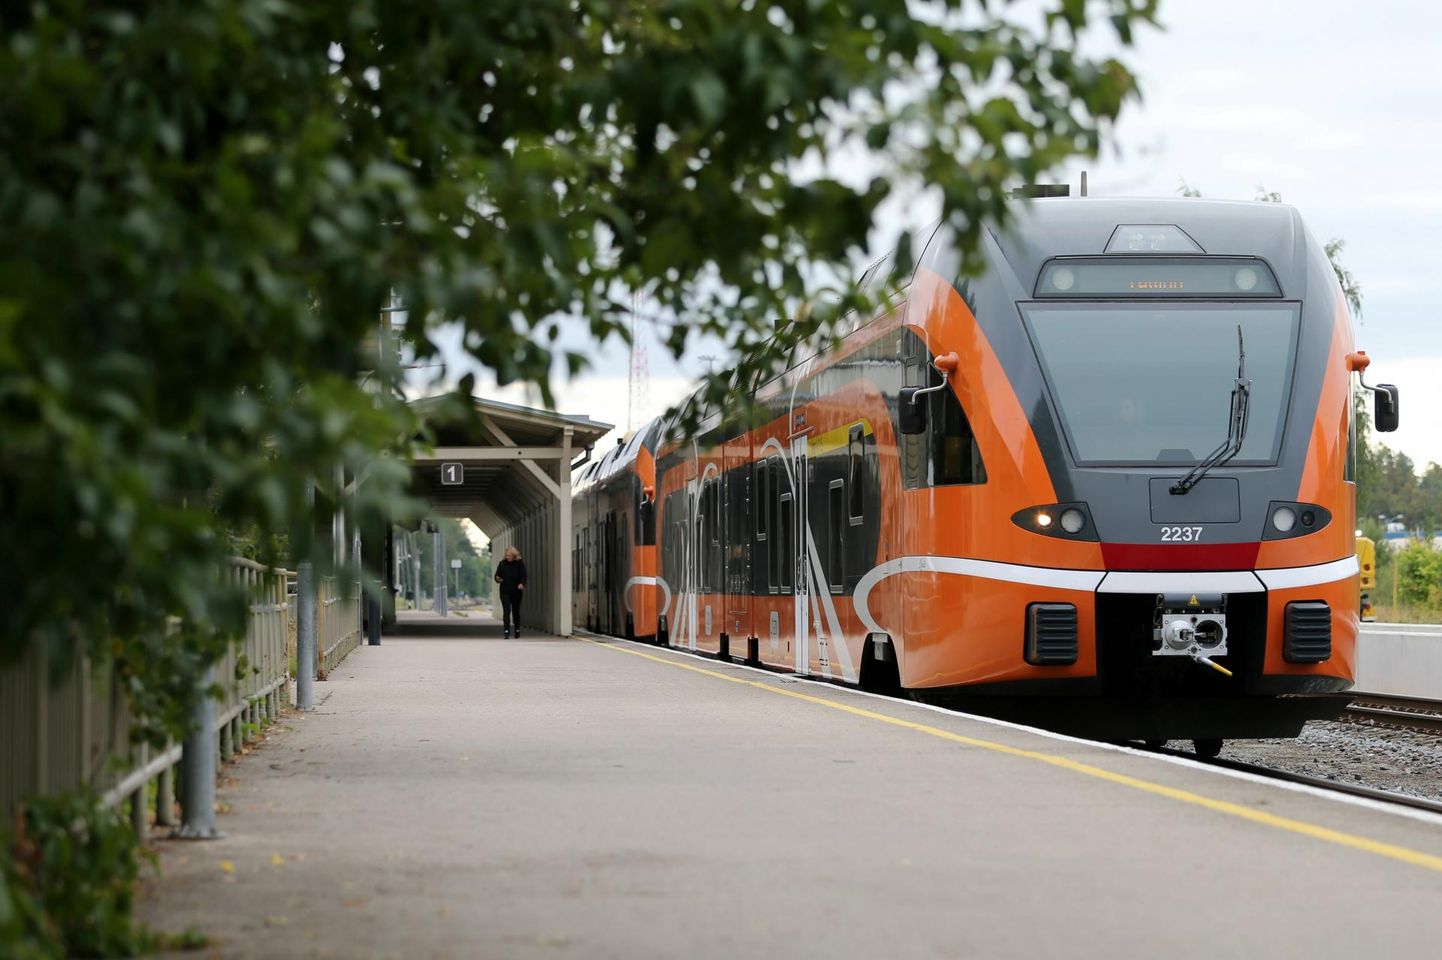 Praegu väljuvad Tartu vaksalist vaid diiselrongid, sest kogu raudteevõrgustik pole veel elektrifitseeritud. Elektrirongid saavad sõita ainult pealinna ümbruses, ent eesmärk on, et 2024. aasta lõpuks on ka Tallinna-Tartu lõik täielikult elektrifitseeritud.